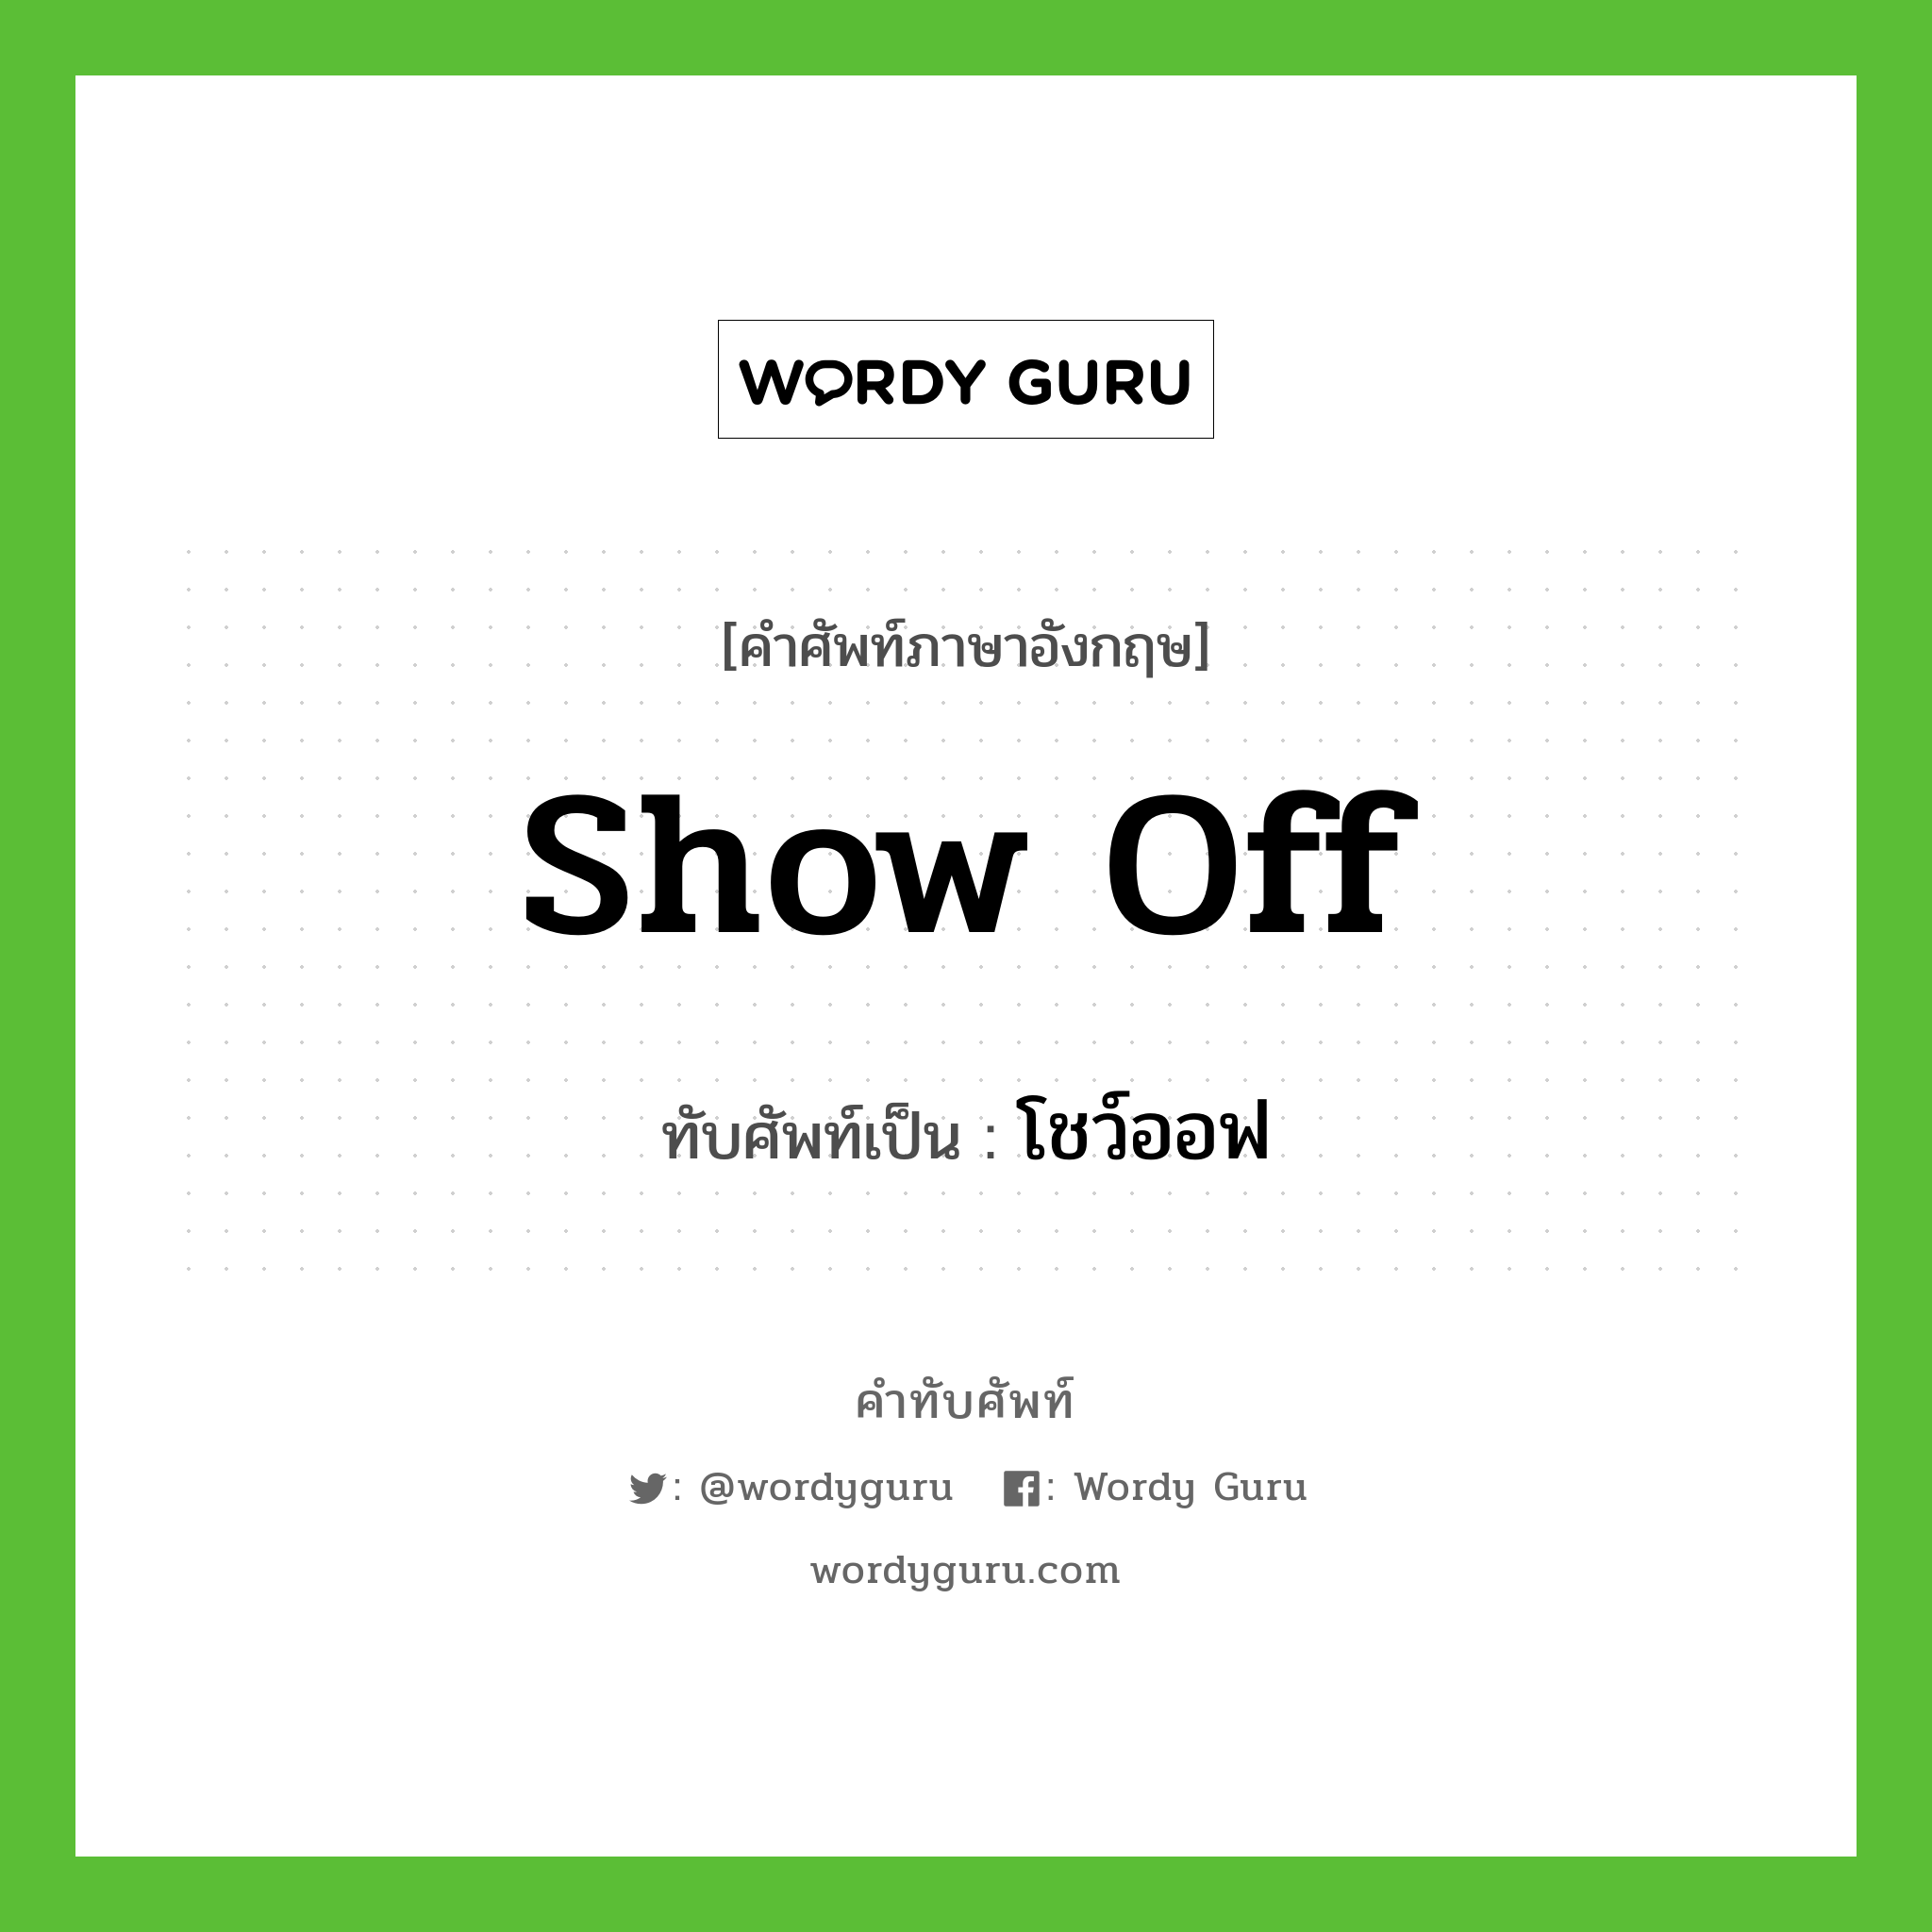 show off เขียนเป็นคำไทยว่าอะไร?, คำศัพท์ภาษาอังกฤษ show off ทับศัพท์เป็น โชว์ออฟ